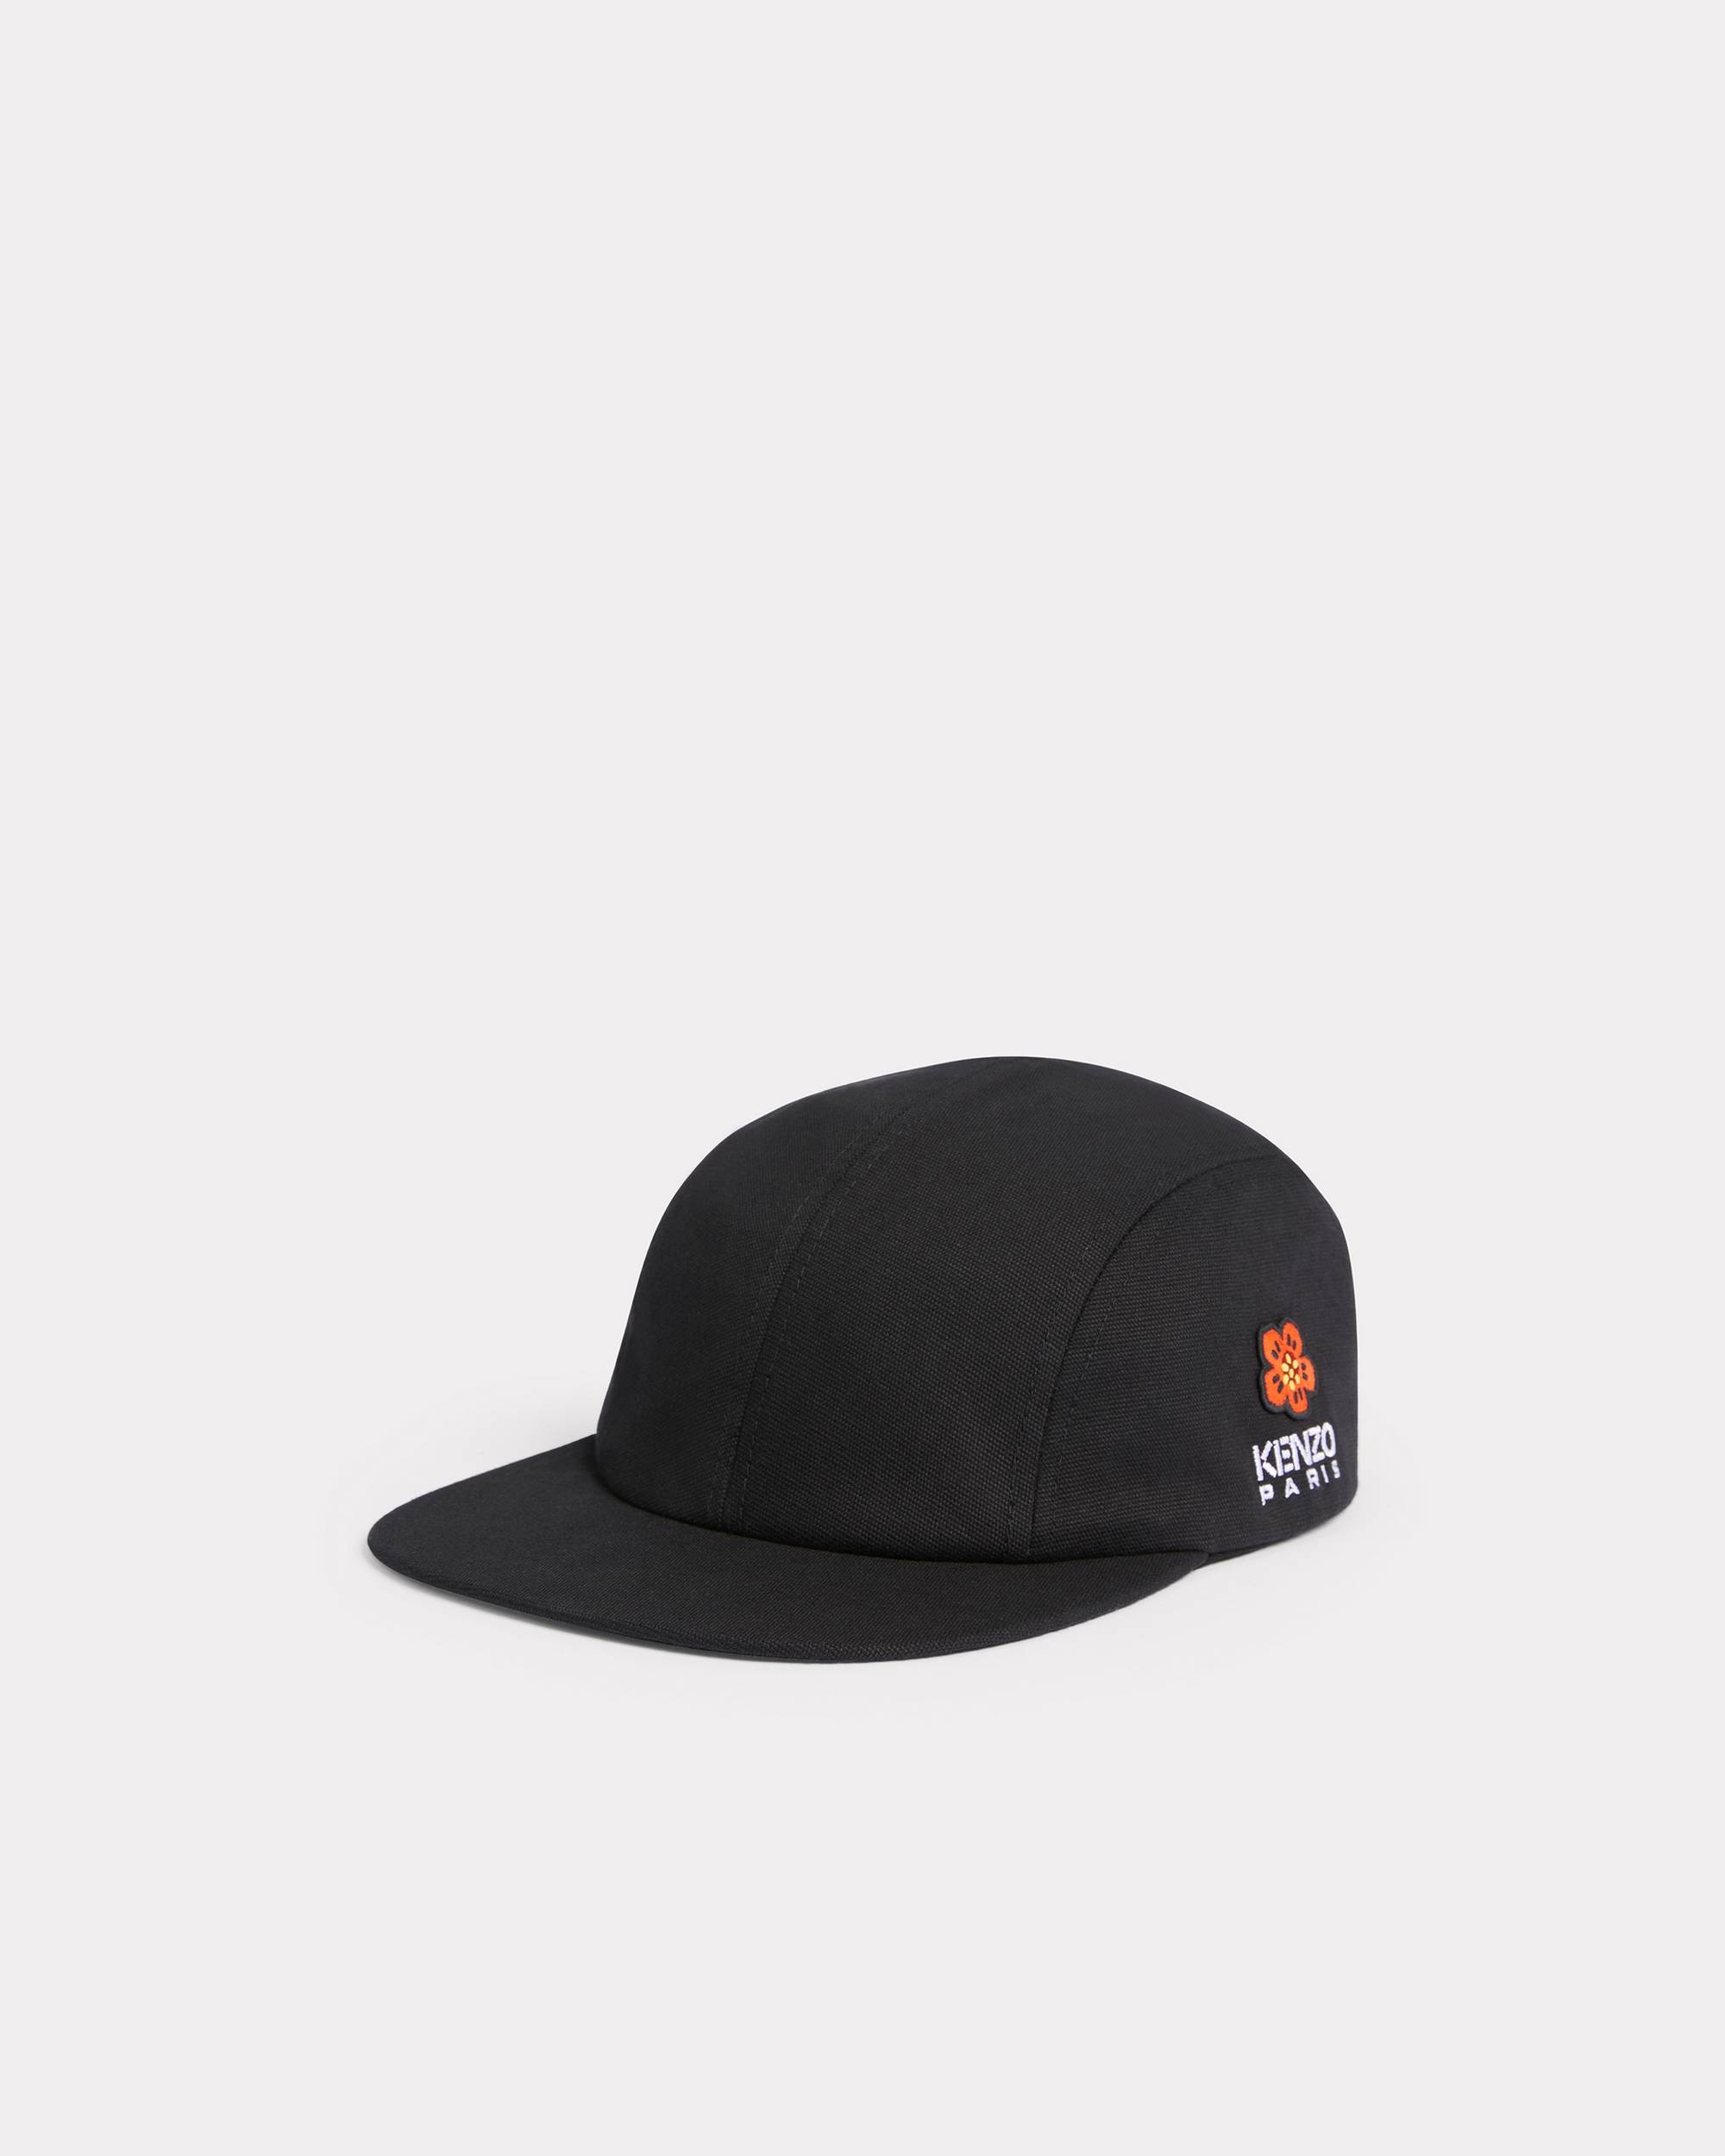 'BOKE FLOWER' Crest baseball hat - 1